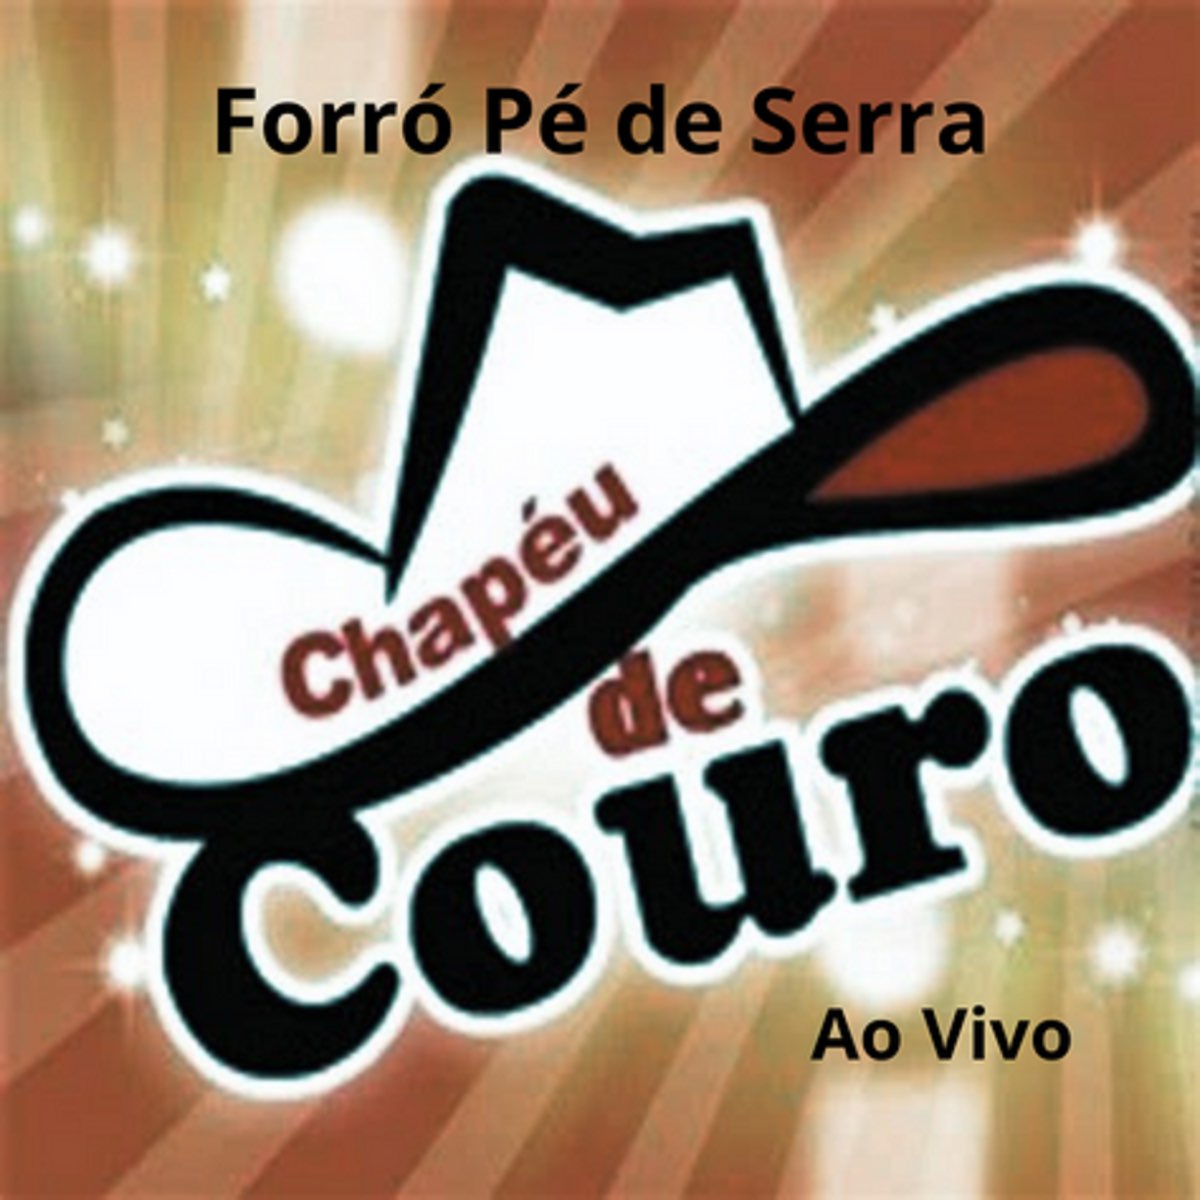 FORRÓ PÉ DE SERRA - AO VIVO — álbum de CHAPÉU DE COURO — Apple Music